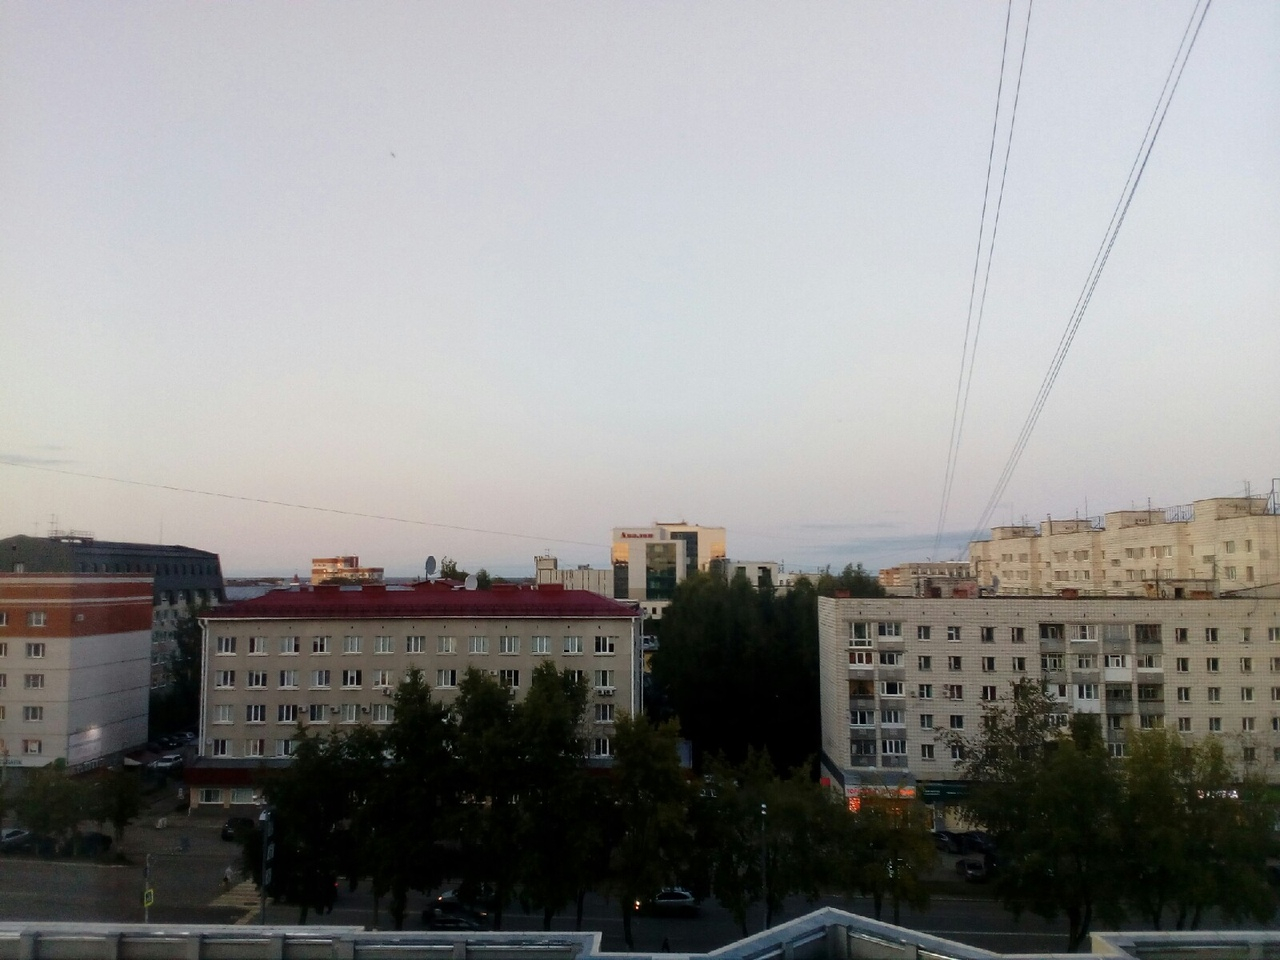 Фото дня в Сыктывкаре: последние отголоски заката над вечерним городом